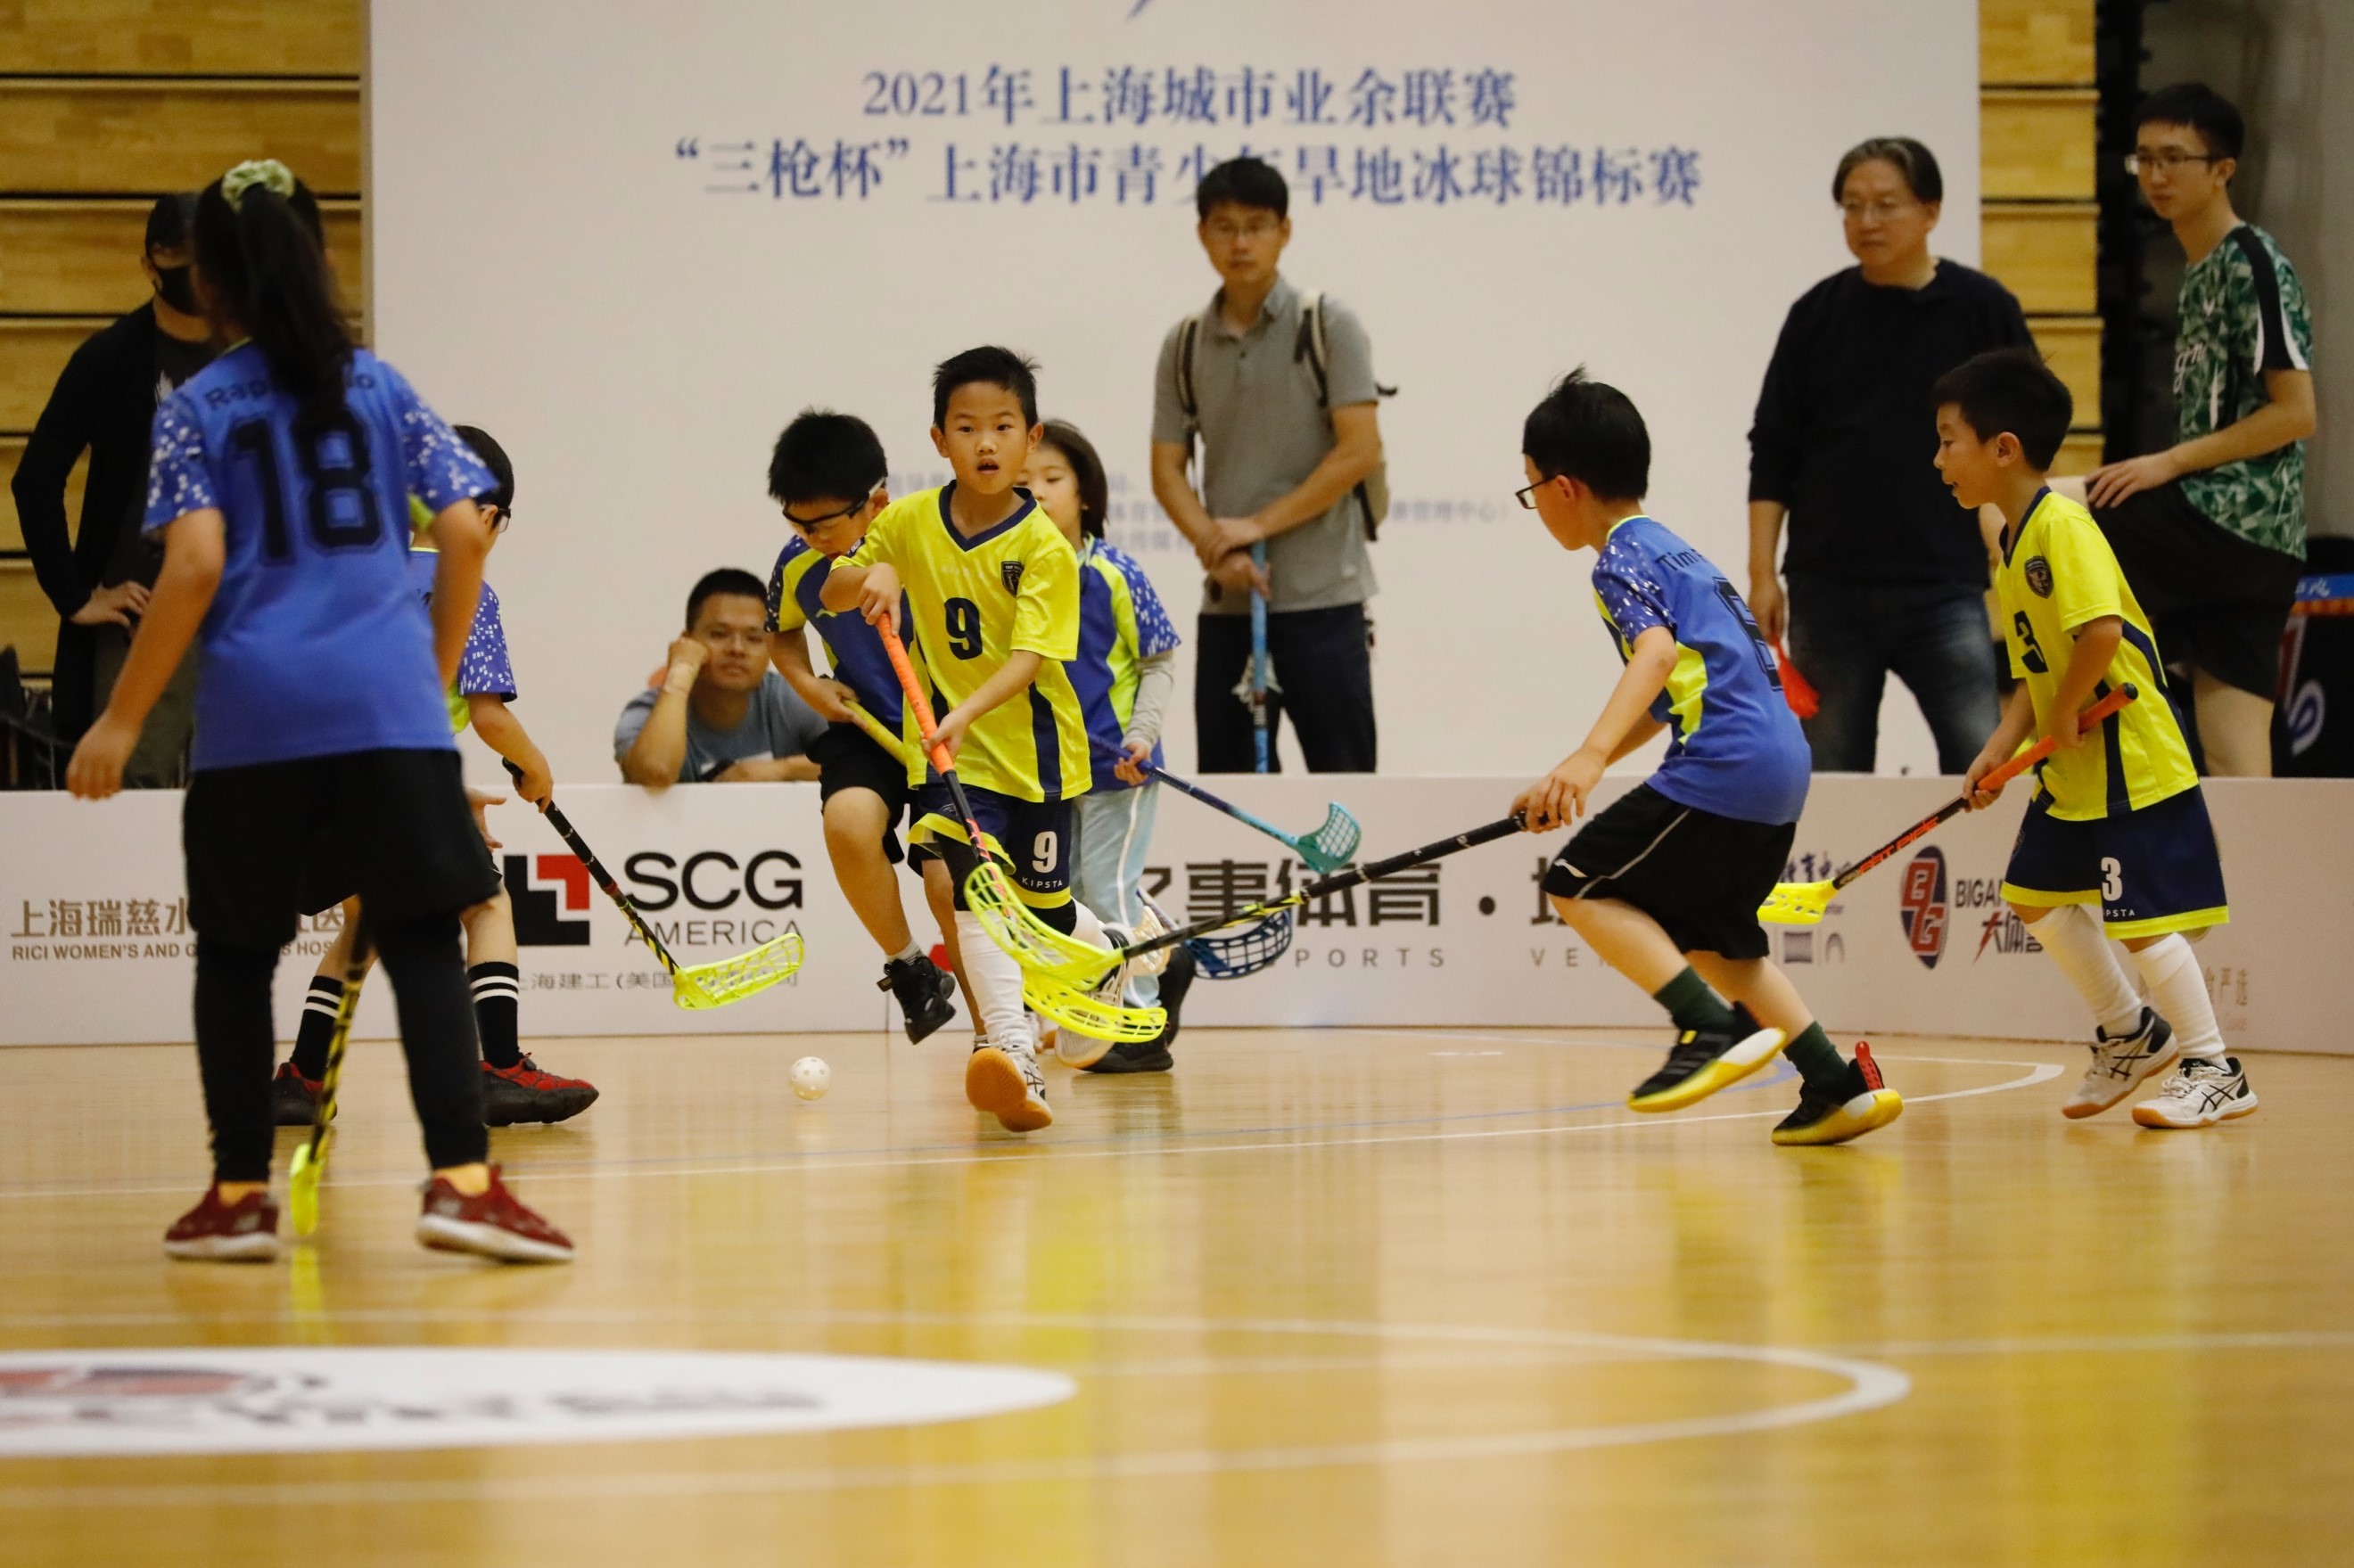 木地板上也能打冰球!上海市青少年旱地冰球锦标赛开杆